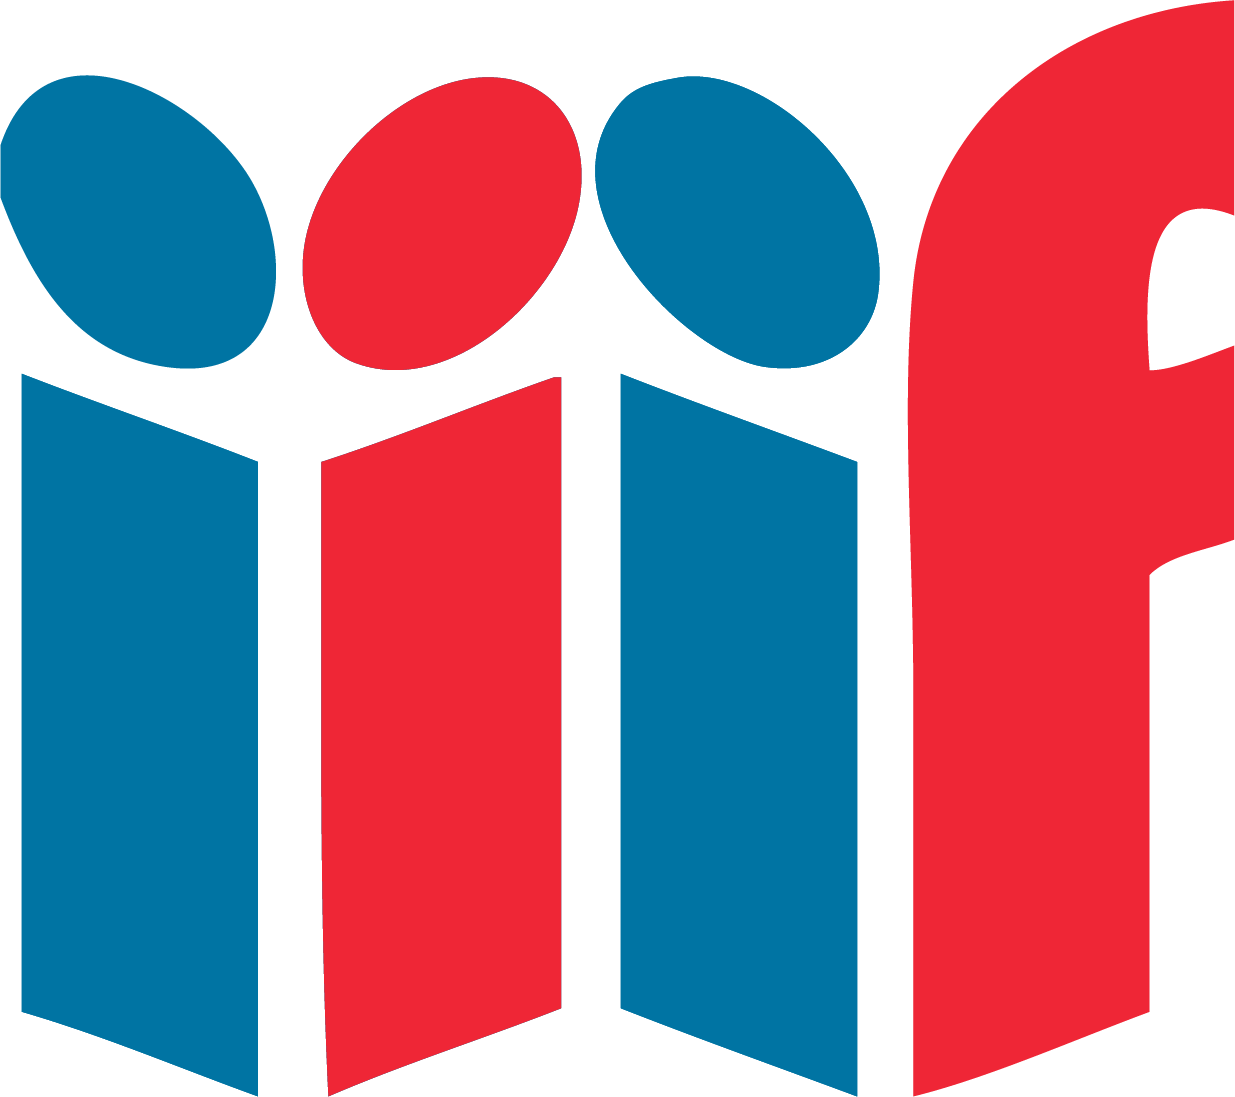 IAW logo